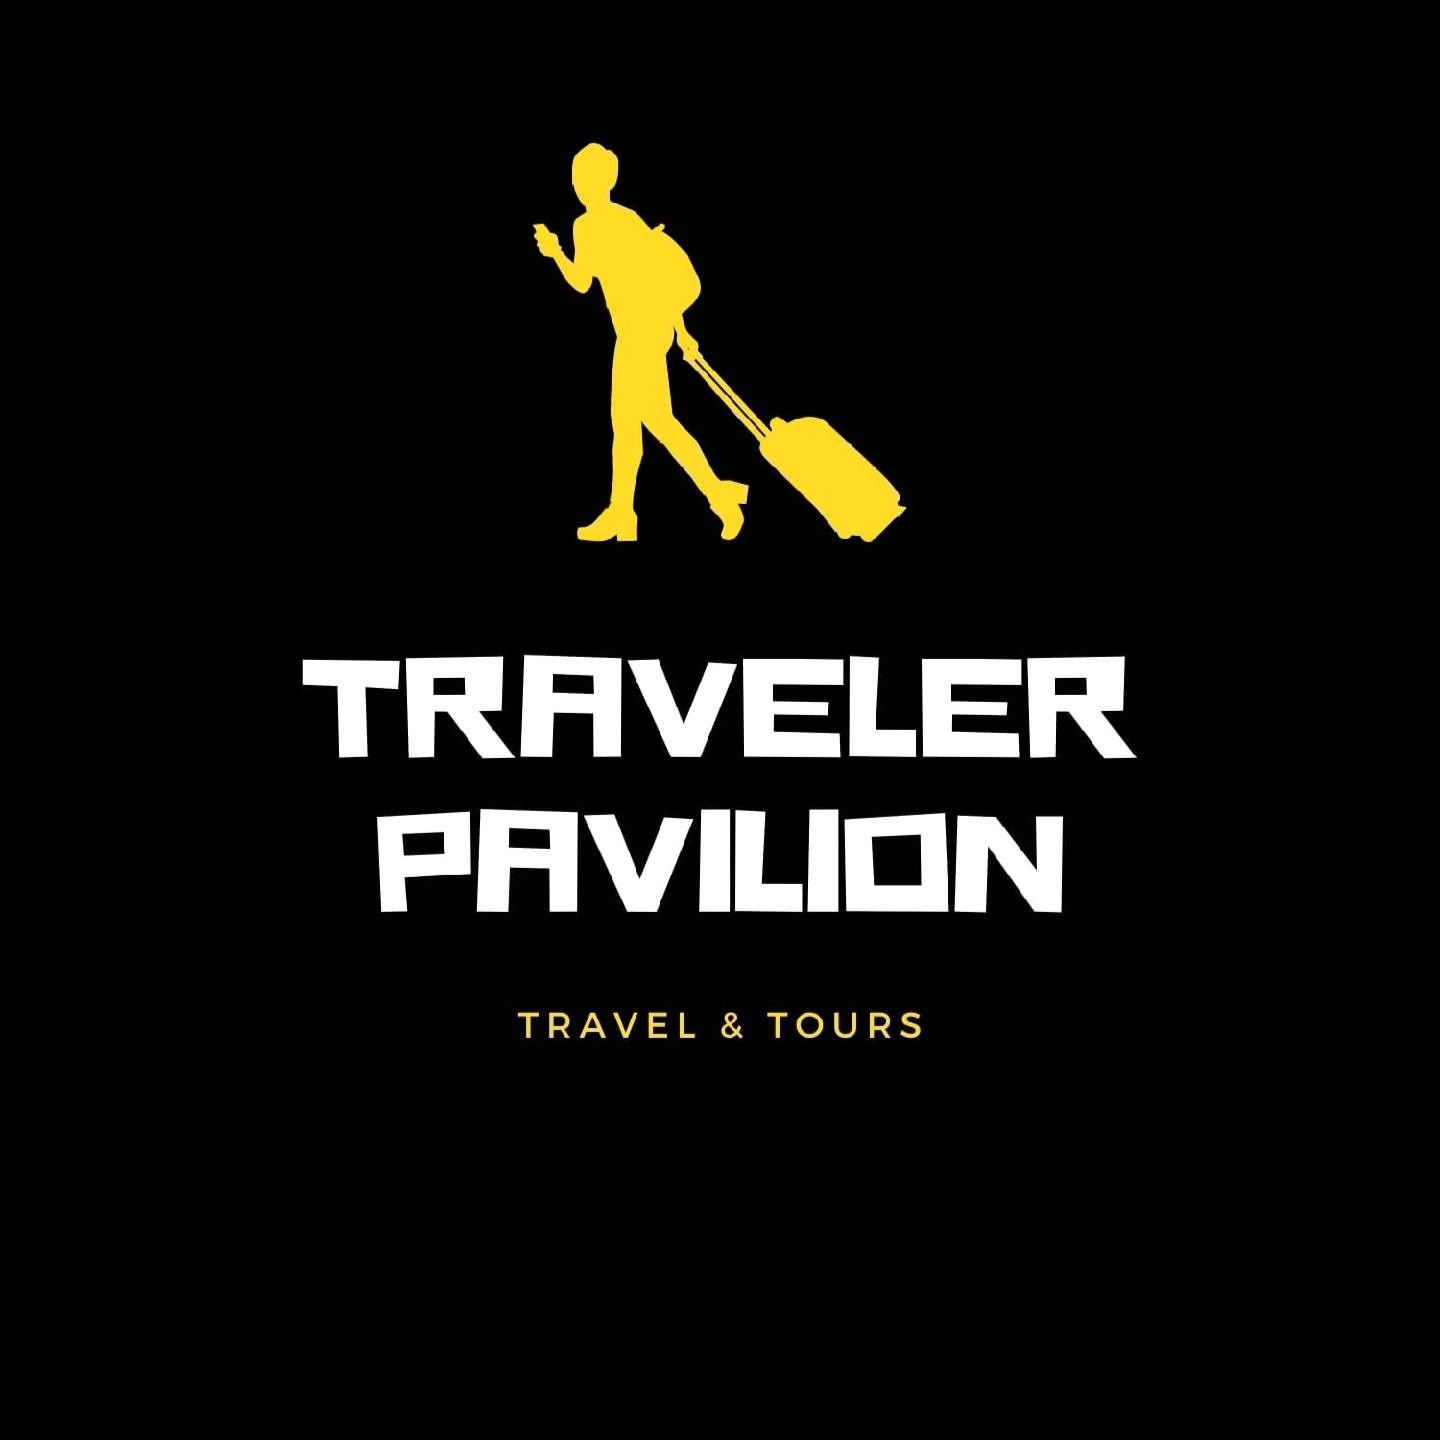 Travelerpavilio's images